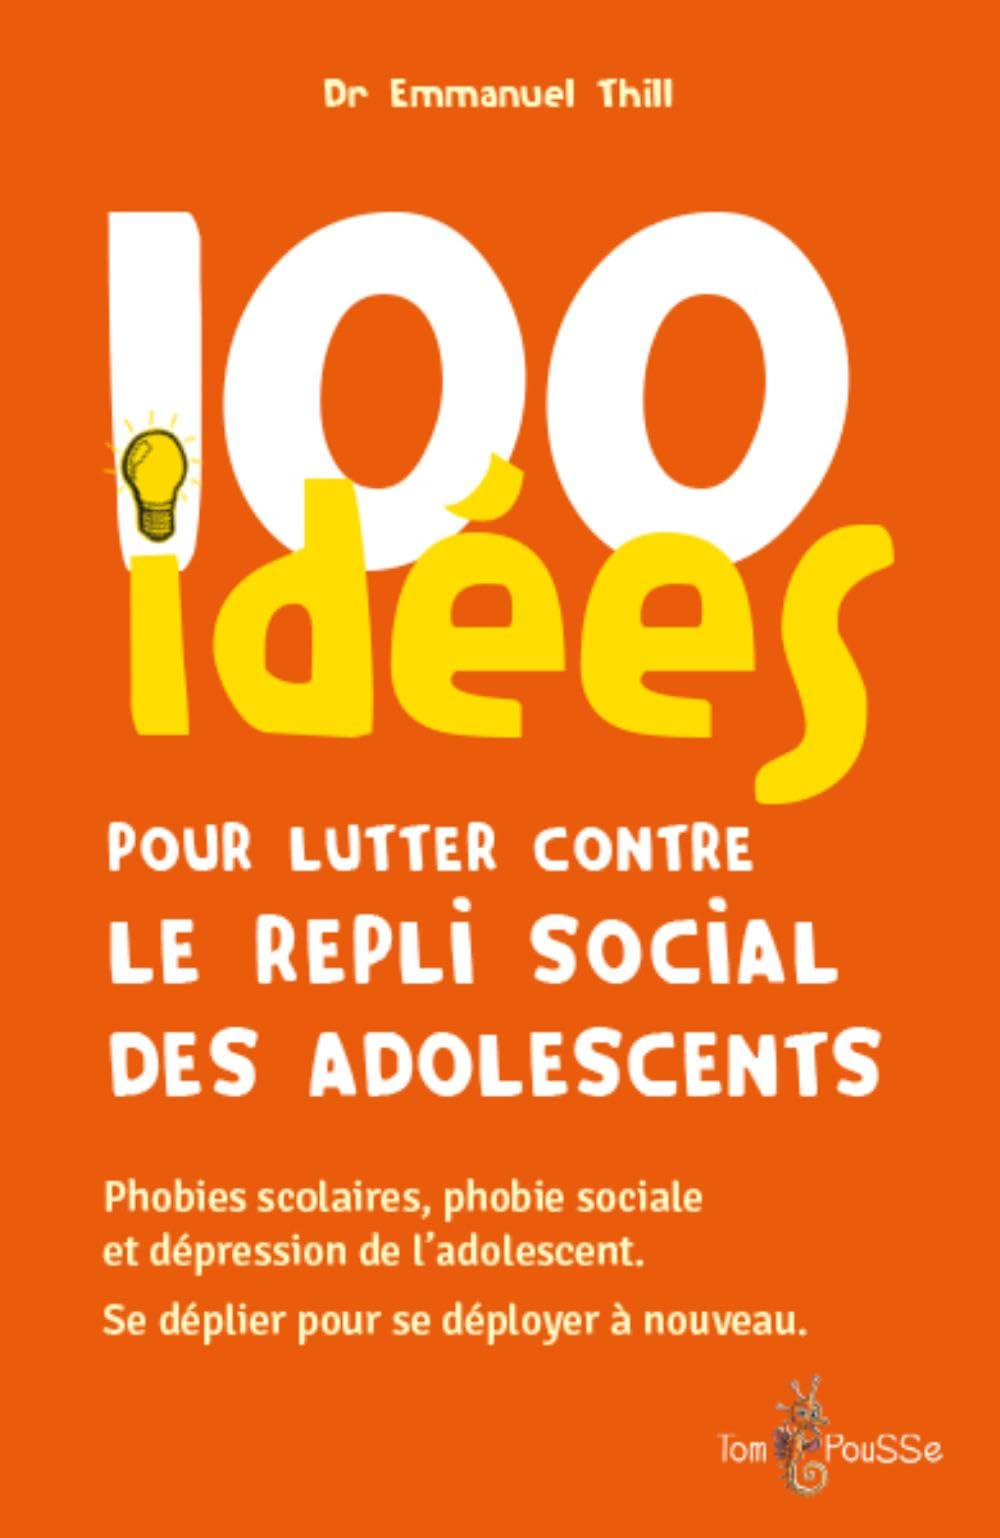 100 idées pour lutter contre le repli social des adolescents : phobies scolaires, phobie sociale et 